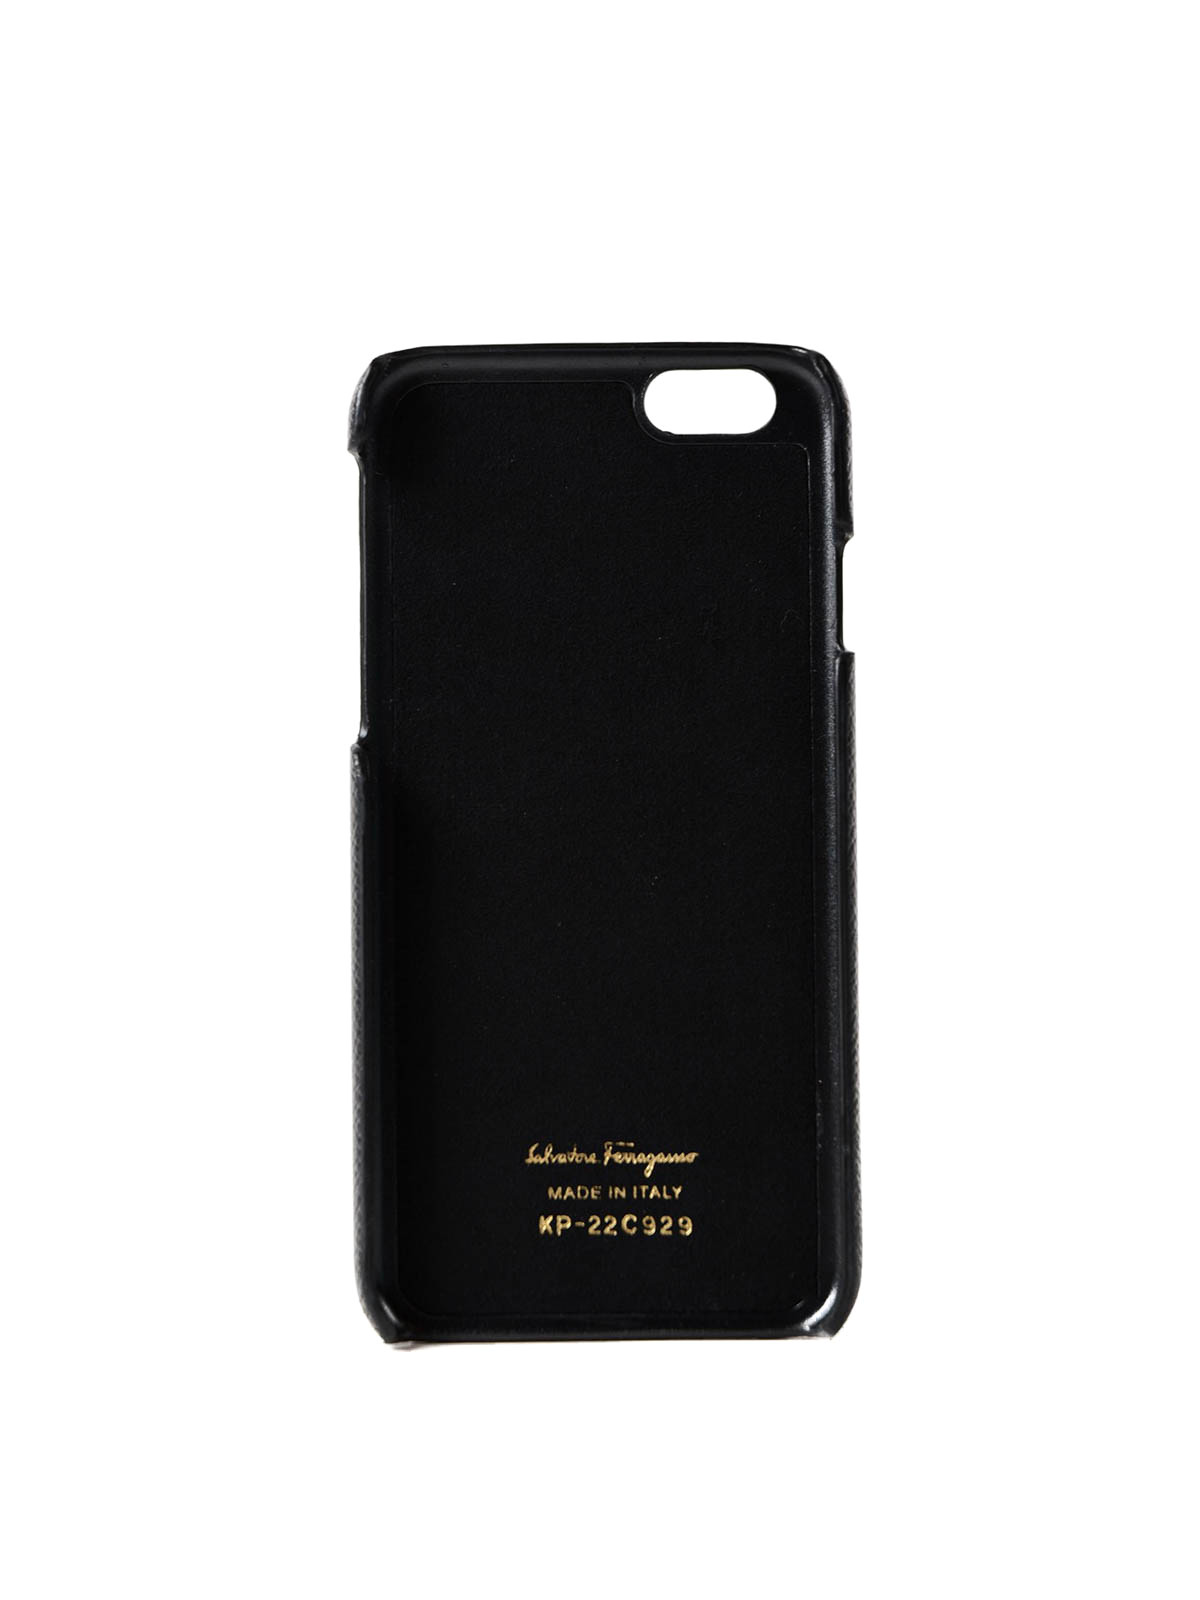 Cases & Covers Salvatore Ferragamo - iPhone 6 Vara bow case - 22C929673793